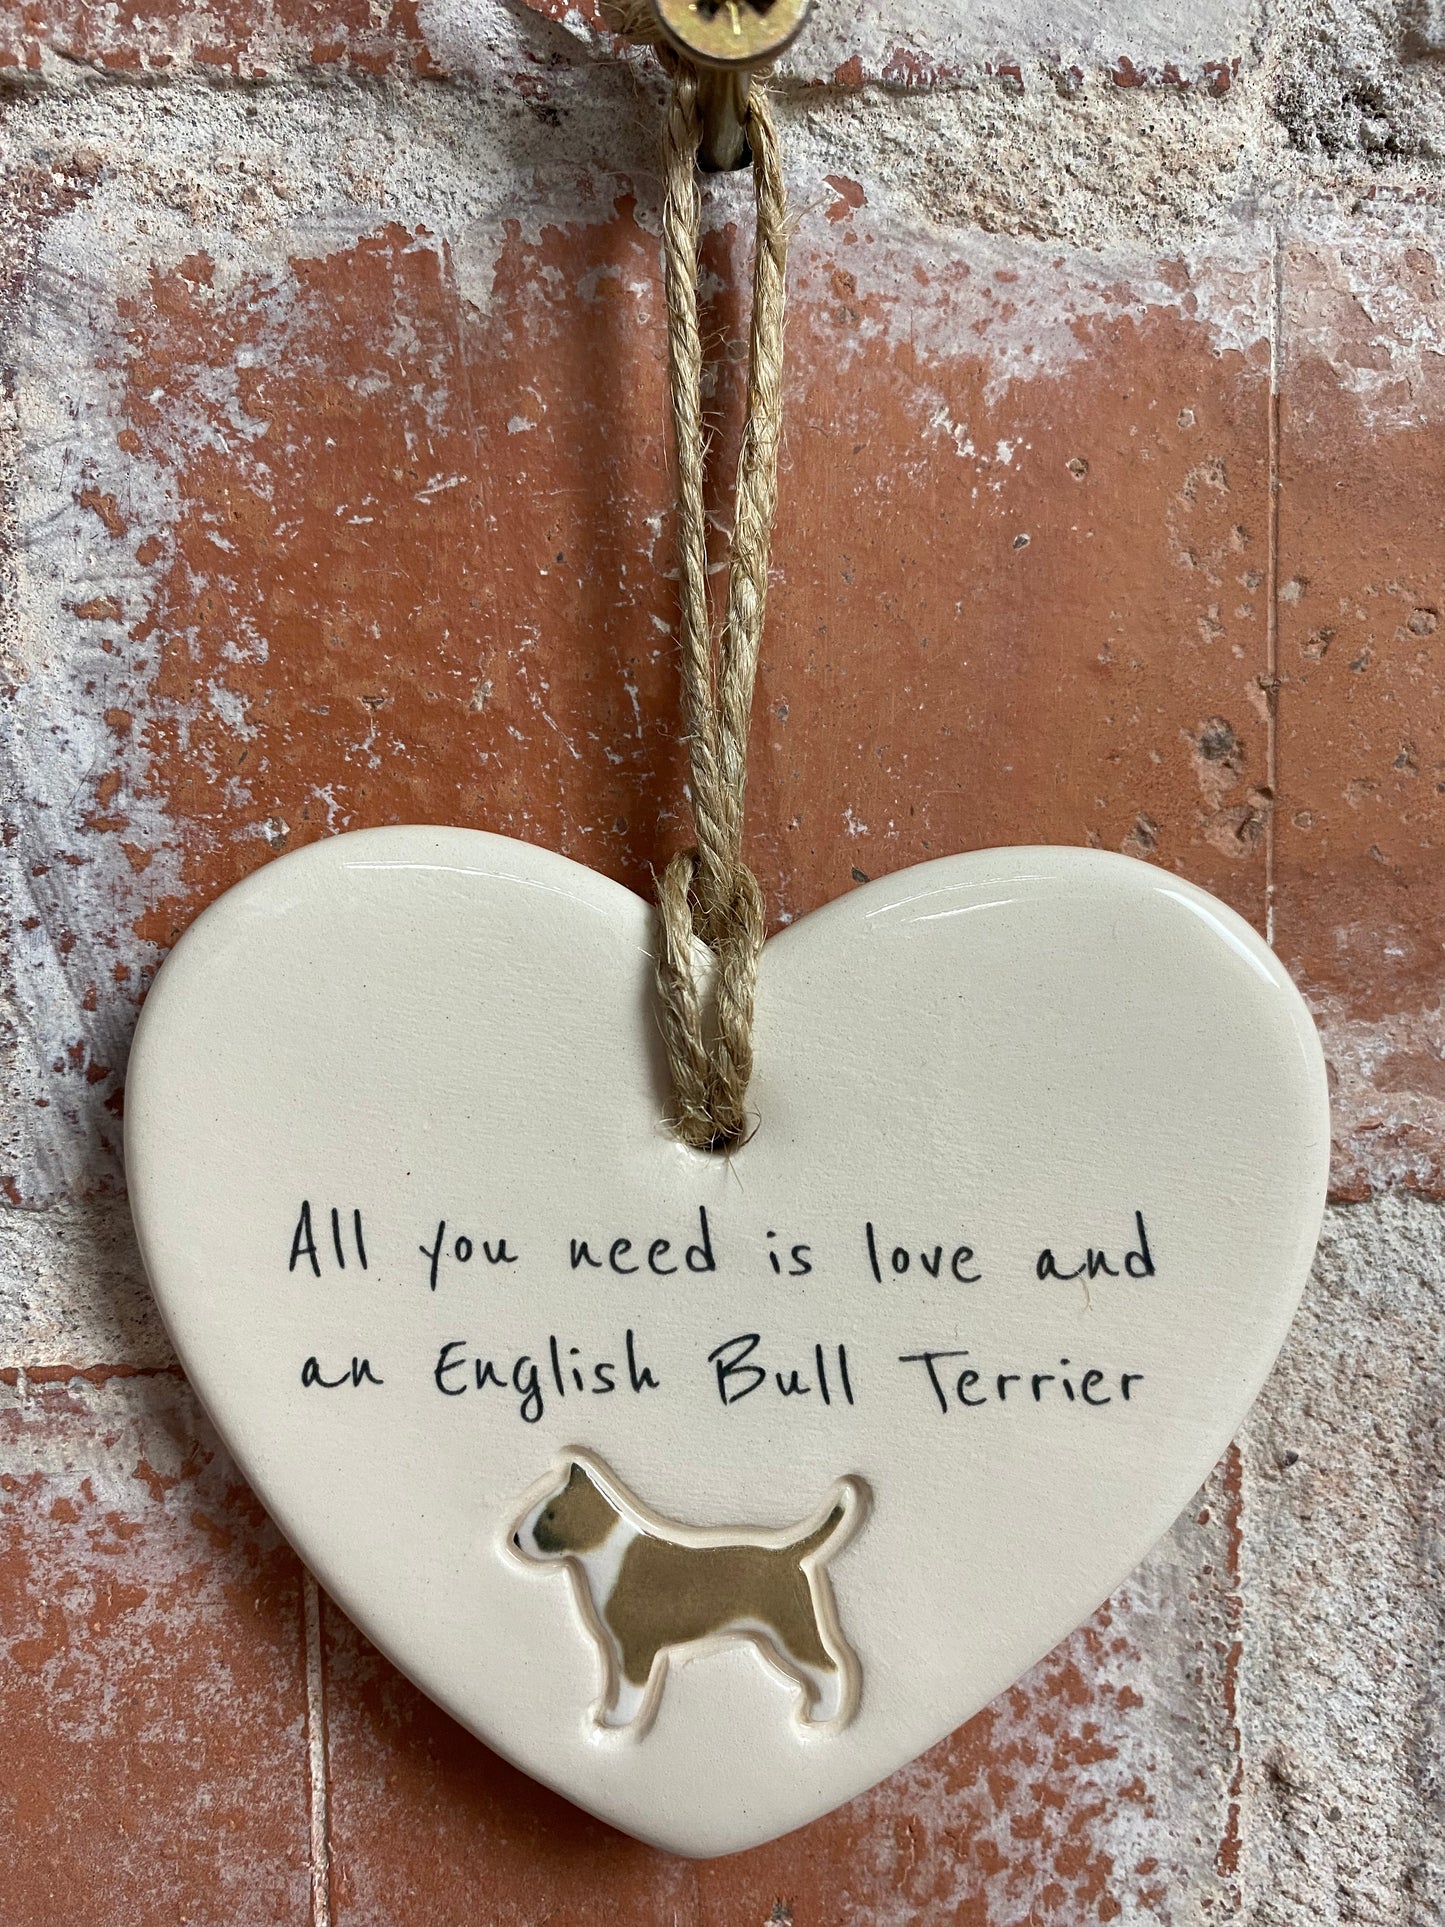 English Bull Terrier heart